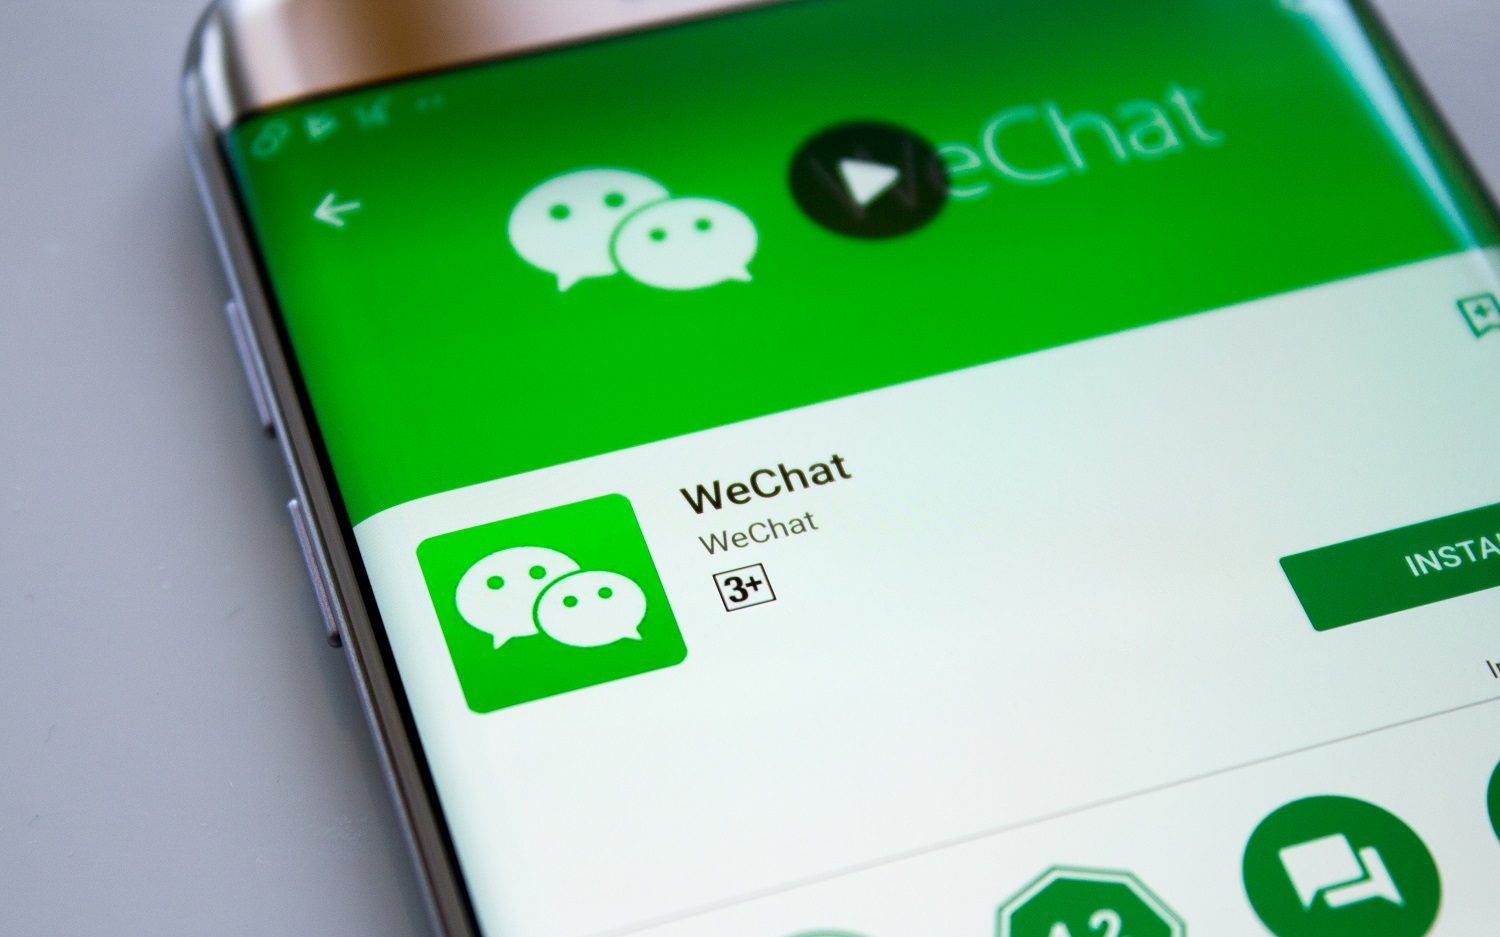 Hành trình 11 năm của WeChat: Siêu ứng dụng tạo ra 'phép màu' tăng trưởng từ 0 lên hơn 1 tỷ người dùng, sẵn sàng 'khô máu' với TikTok để chiếm lĩnh thị trường